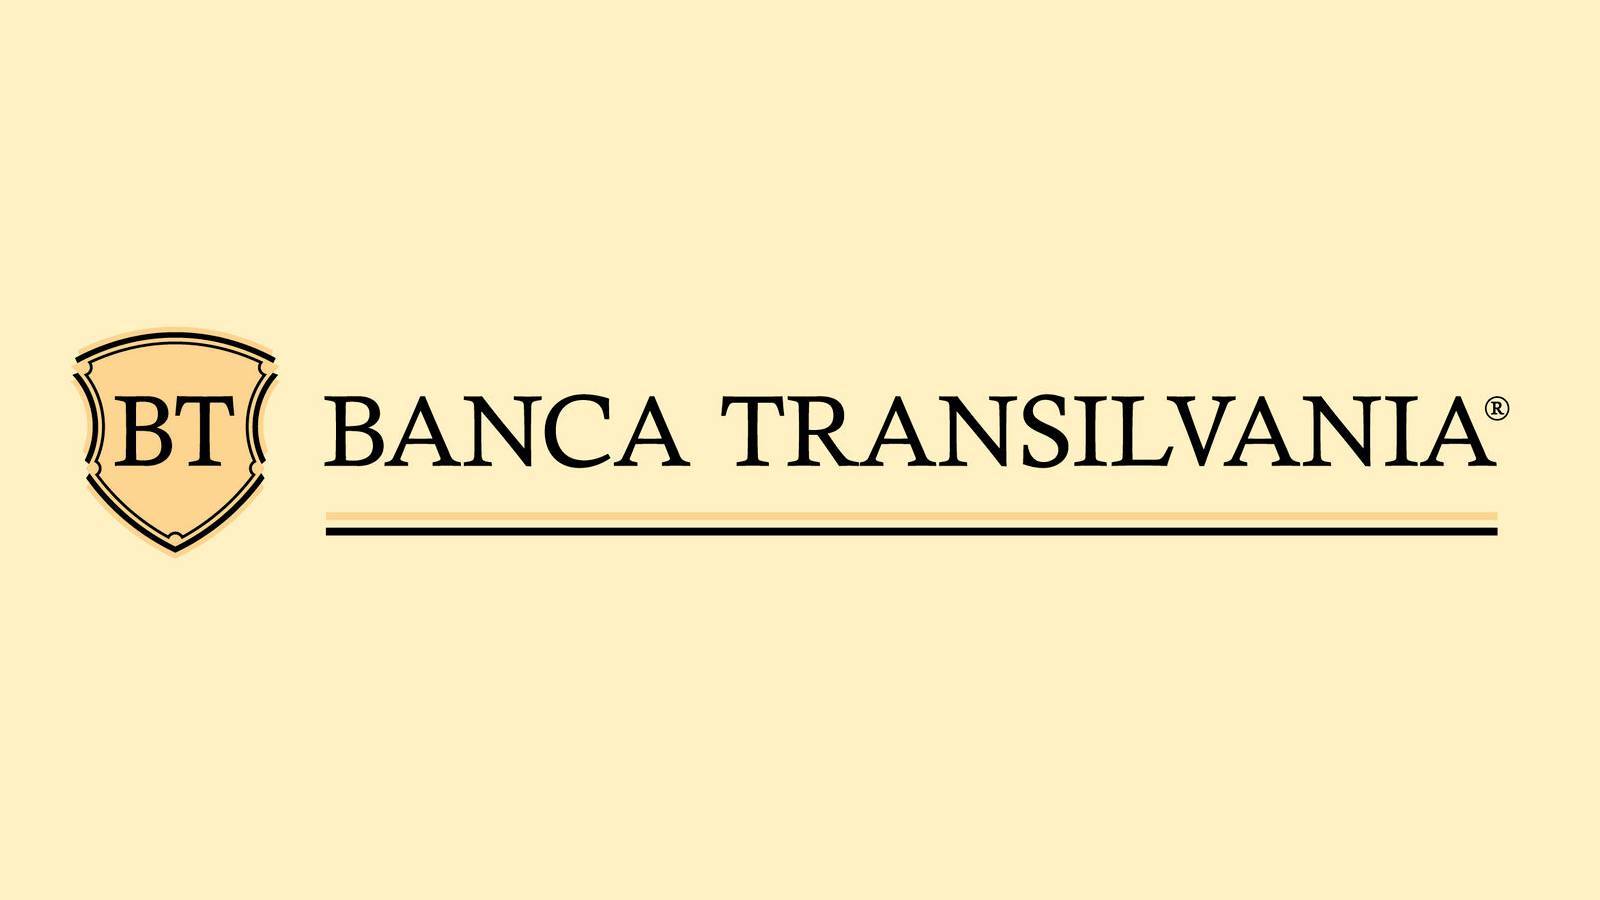 Powiadomienie BANCA Transilvania OSTRZEŻENIE wysłane do wszystkich klientów